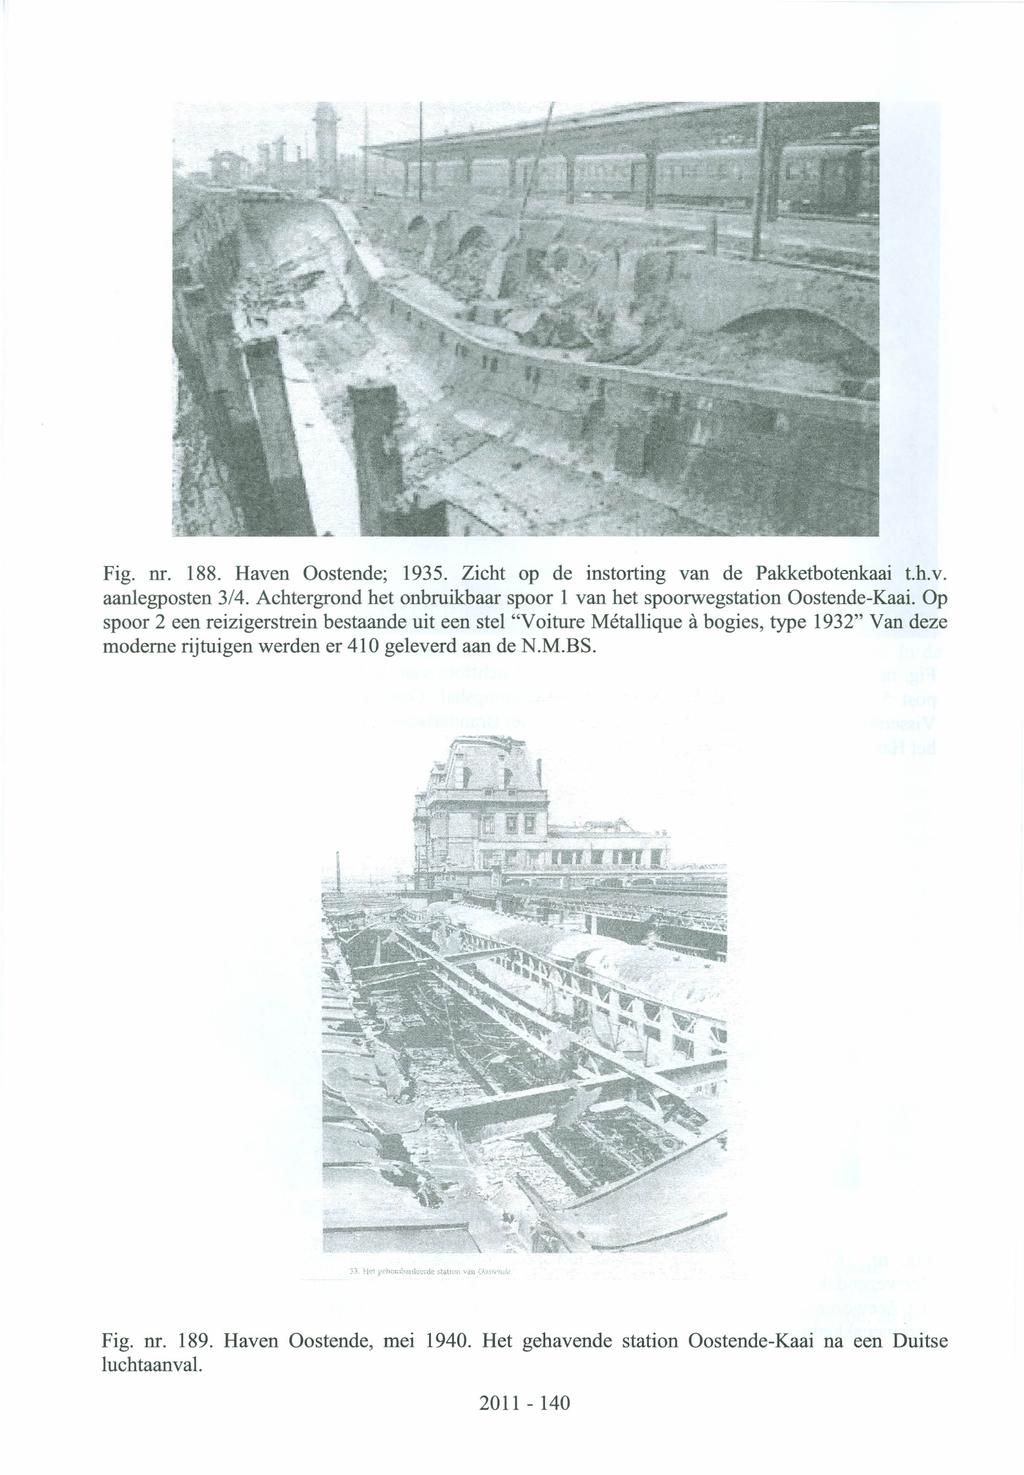 Fig. nr. 188. Haven Oostende; 1935. Zicht op de instorting van de Pakketbotenkaai t.h.v. aanlegposten 3/4. Achtergrond het onbruikbaar spoor 1 van het spoorwegstation Oostende-Kaai.